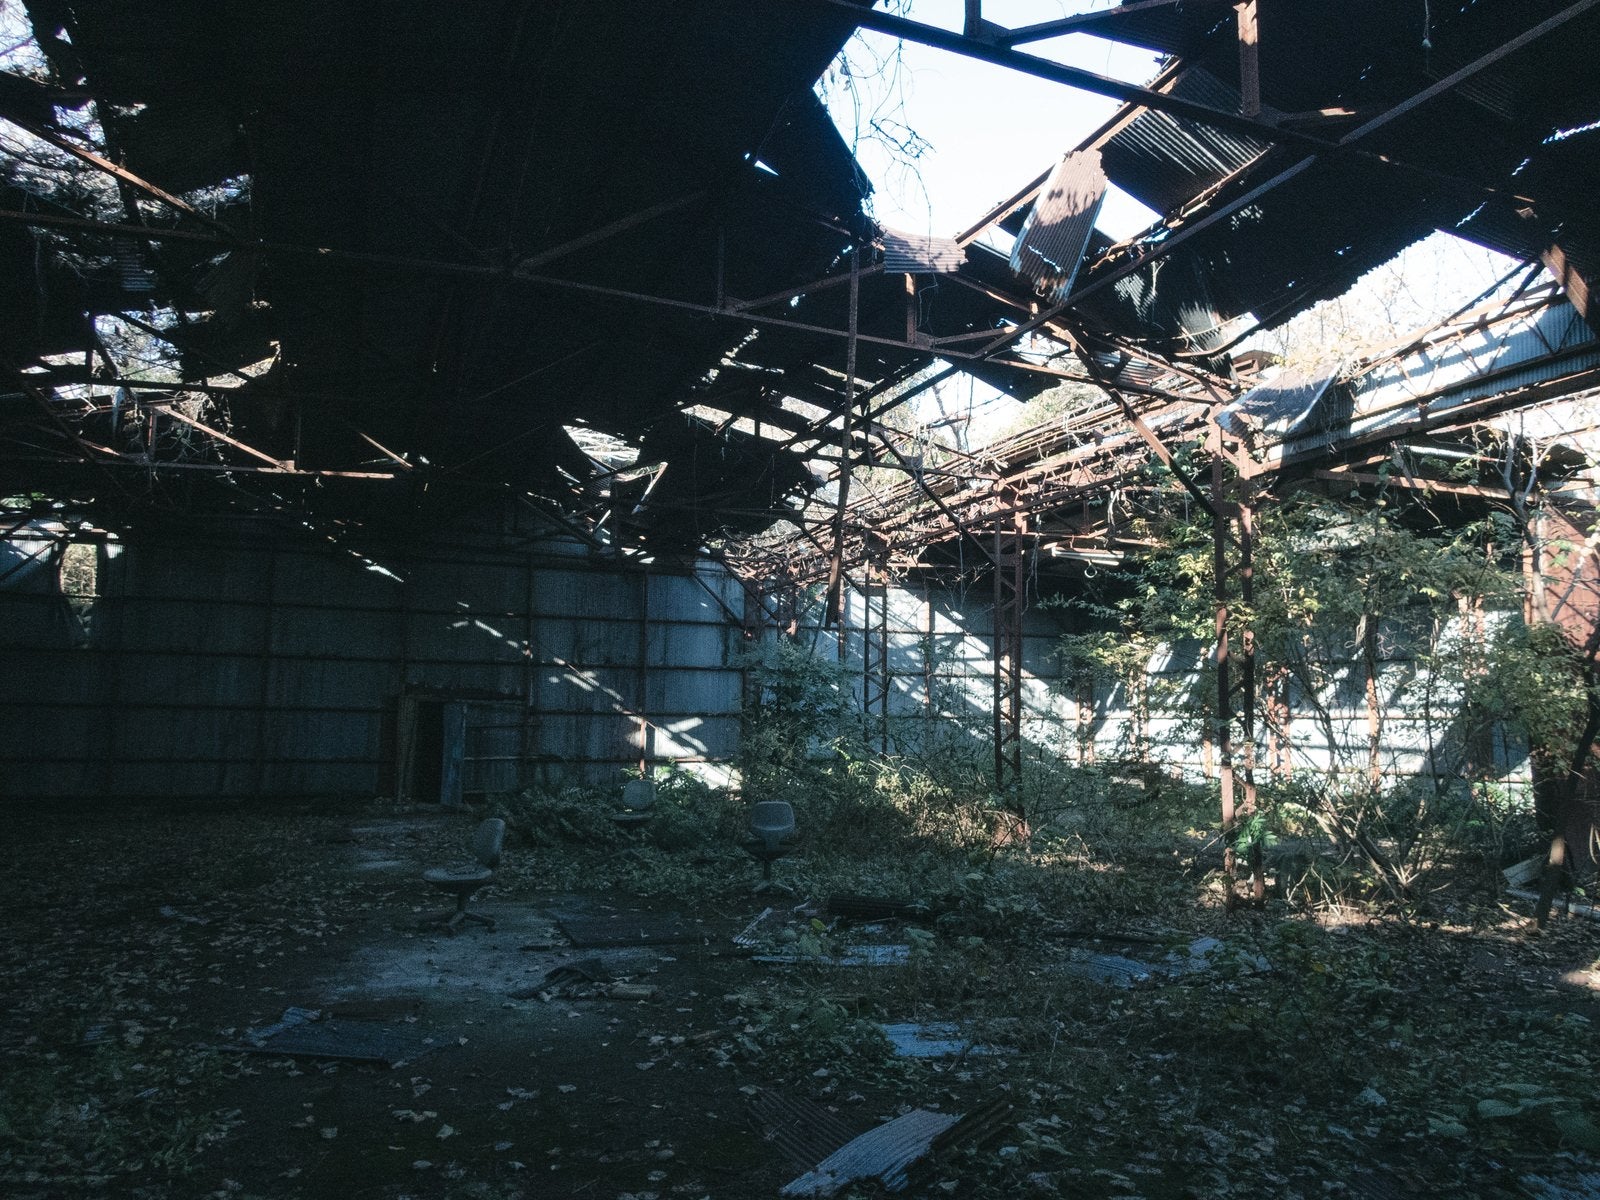 「崩れ落ちた屋根と置き去りの椅子」の写真